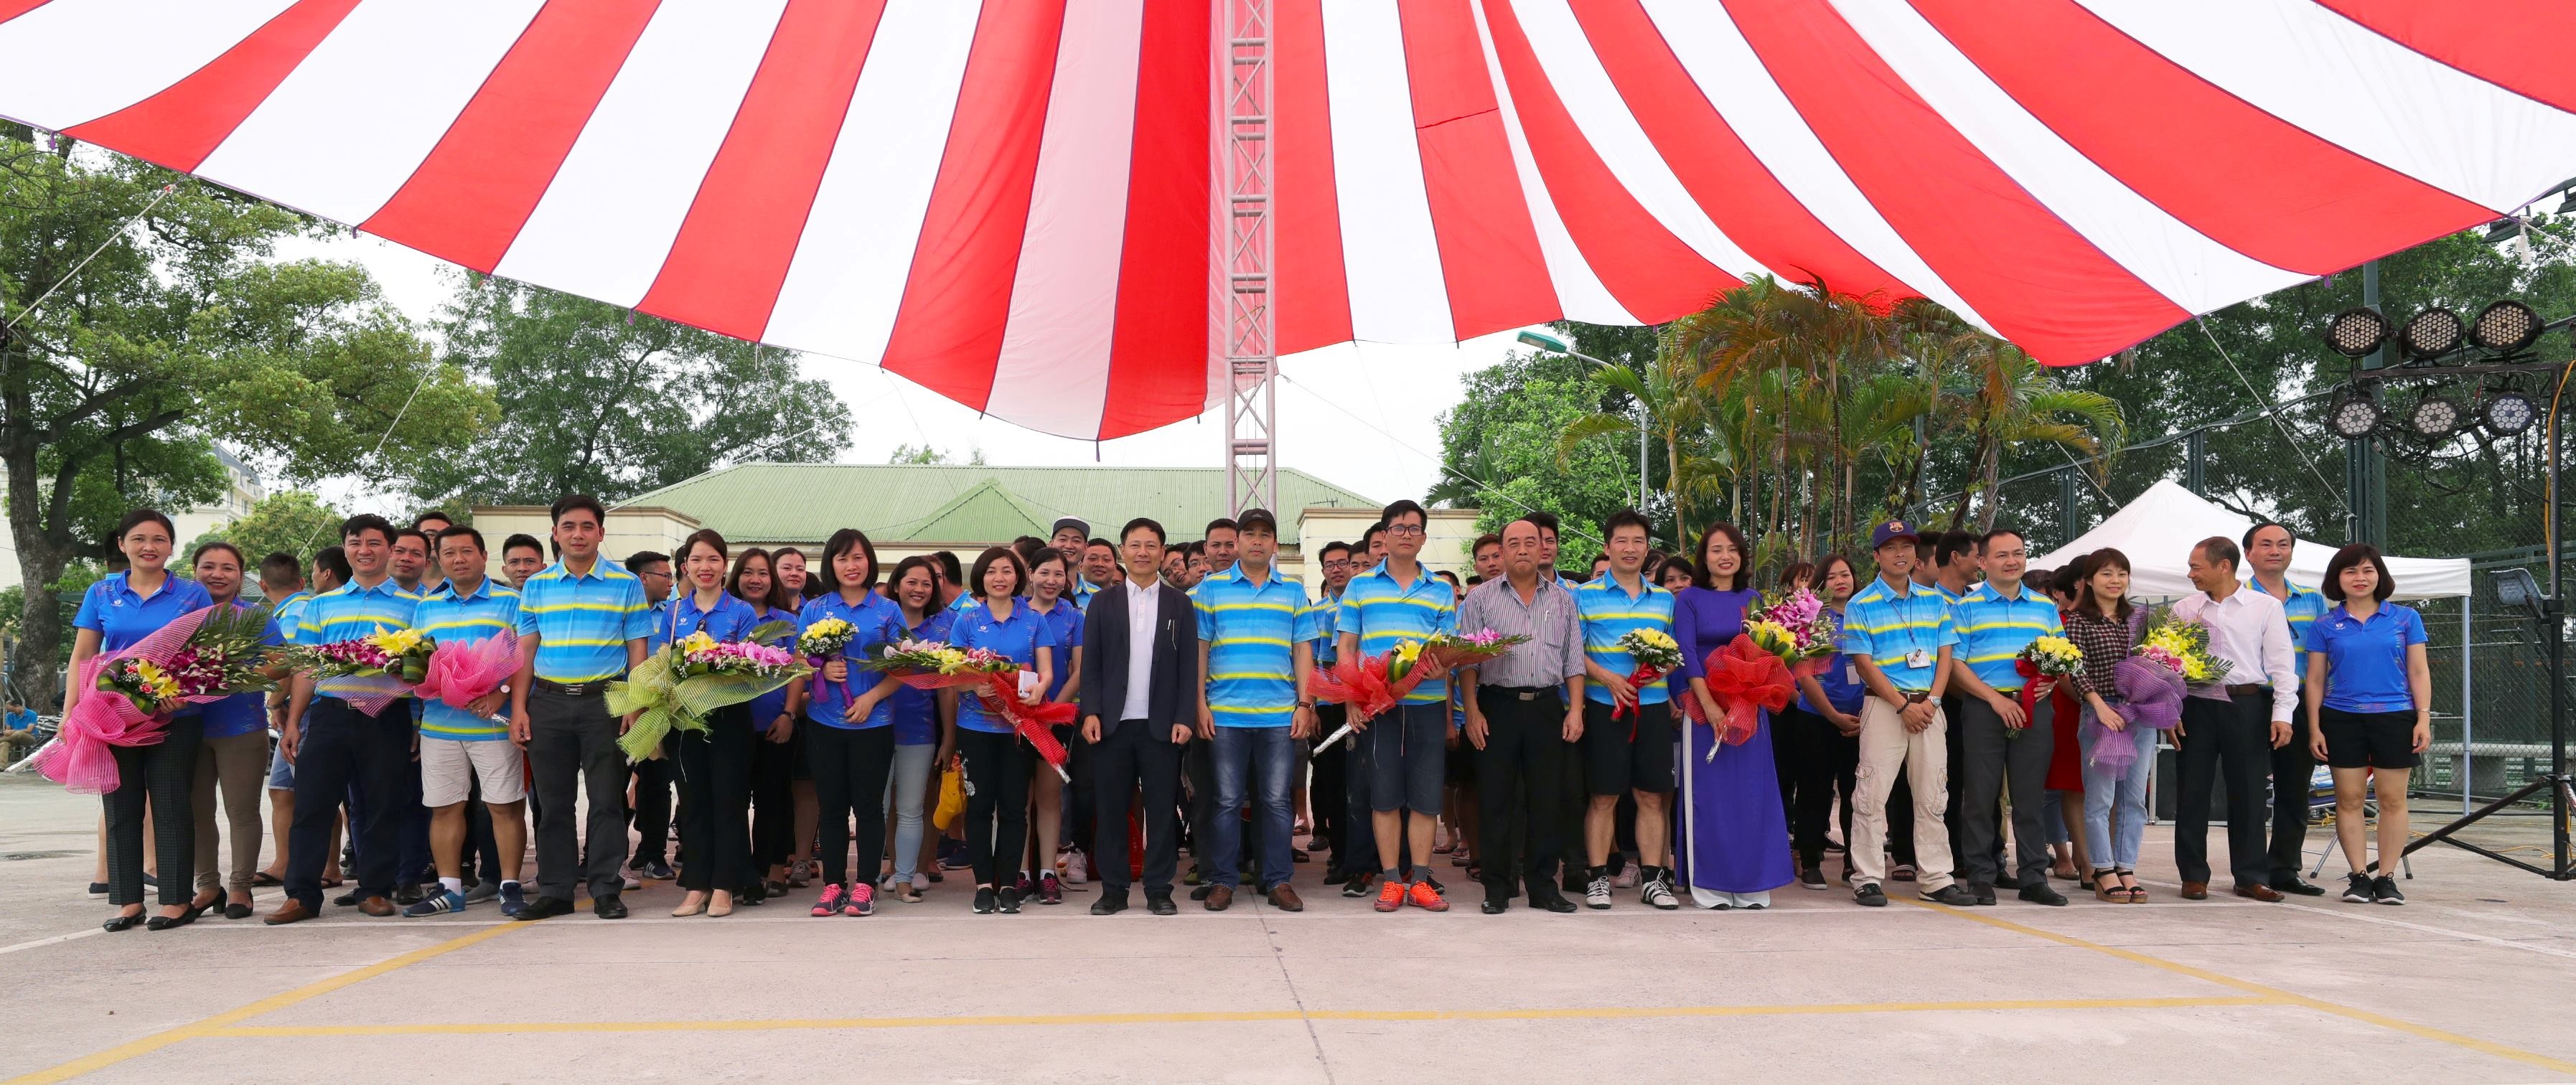 Công ty Quản lý bay miền Bắc tổ chức Lễ Khai mạc Hội thao và Hội diễn văn nghệ quần chúng năm 2018 chào mừng 25 năm thành lập Tổng công ty Quản lý bay Việt Nam